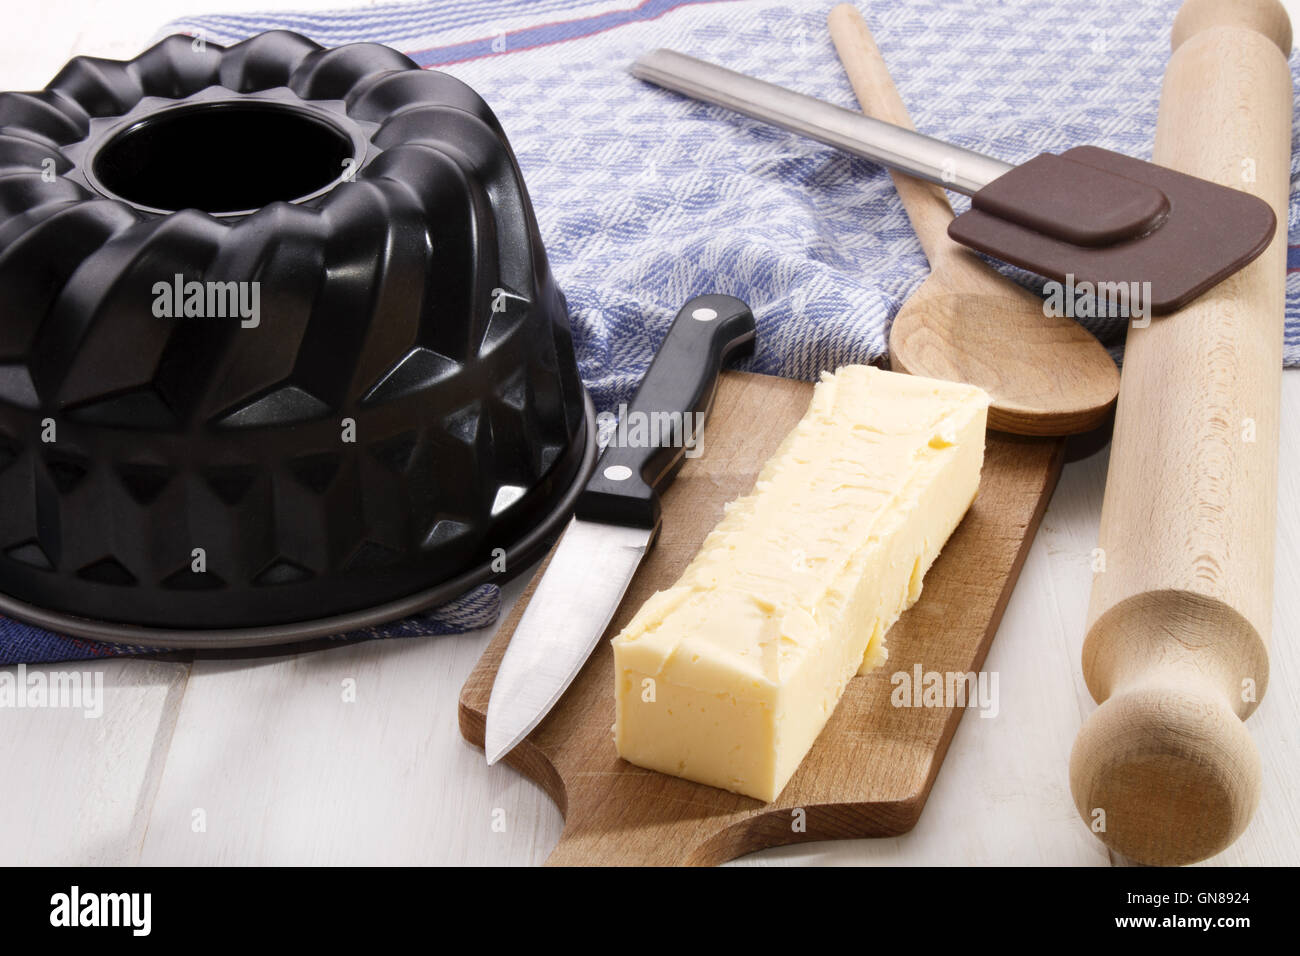 125 gramos de mantequilla stick, ideal para hornear, con un cuchillo sobre una tabla de madera Foto de stock